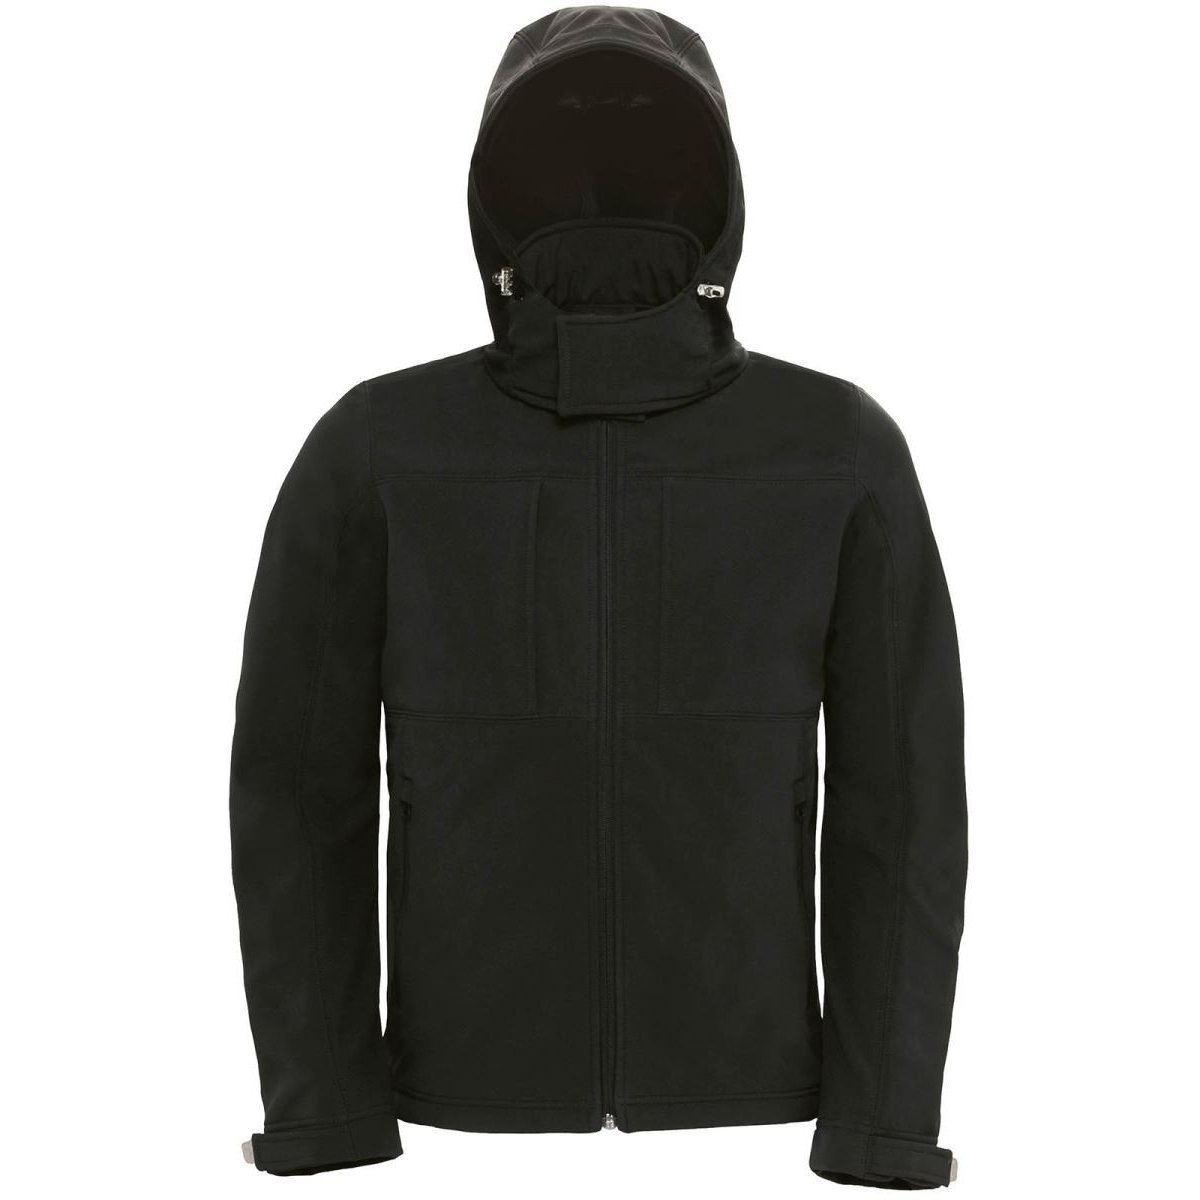 Pánská softshellová bunda s kapucí B&C Hooded Softshell - černá, 3XL